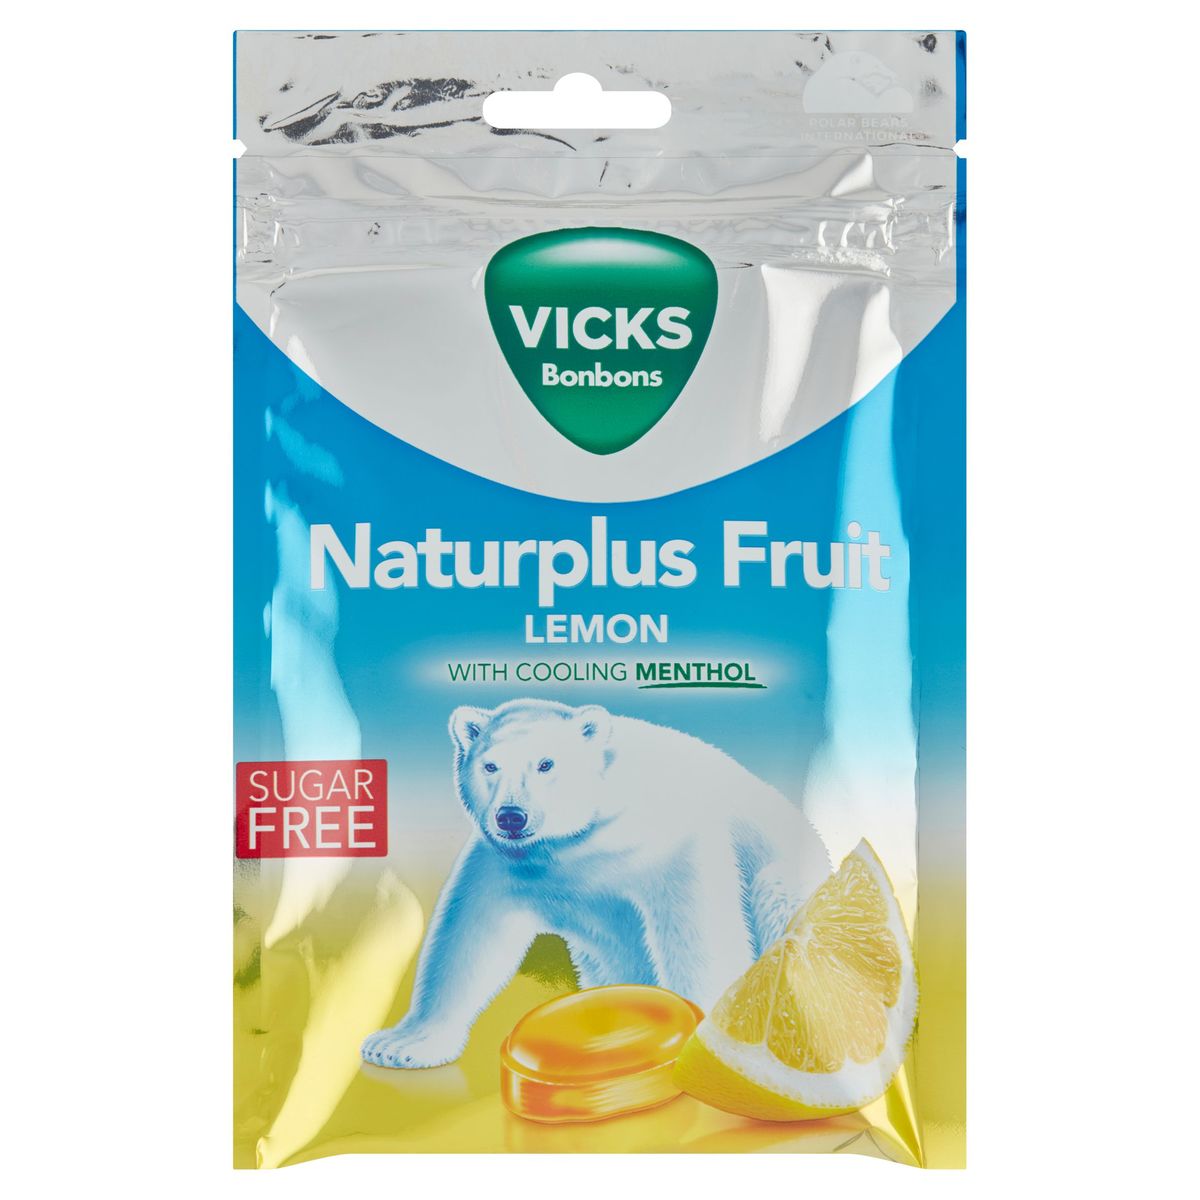 Vicks Bonbons Naturplus Fruit Lemon 72 g